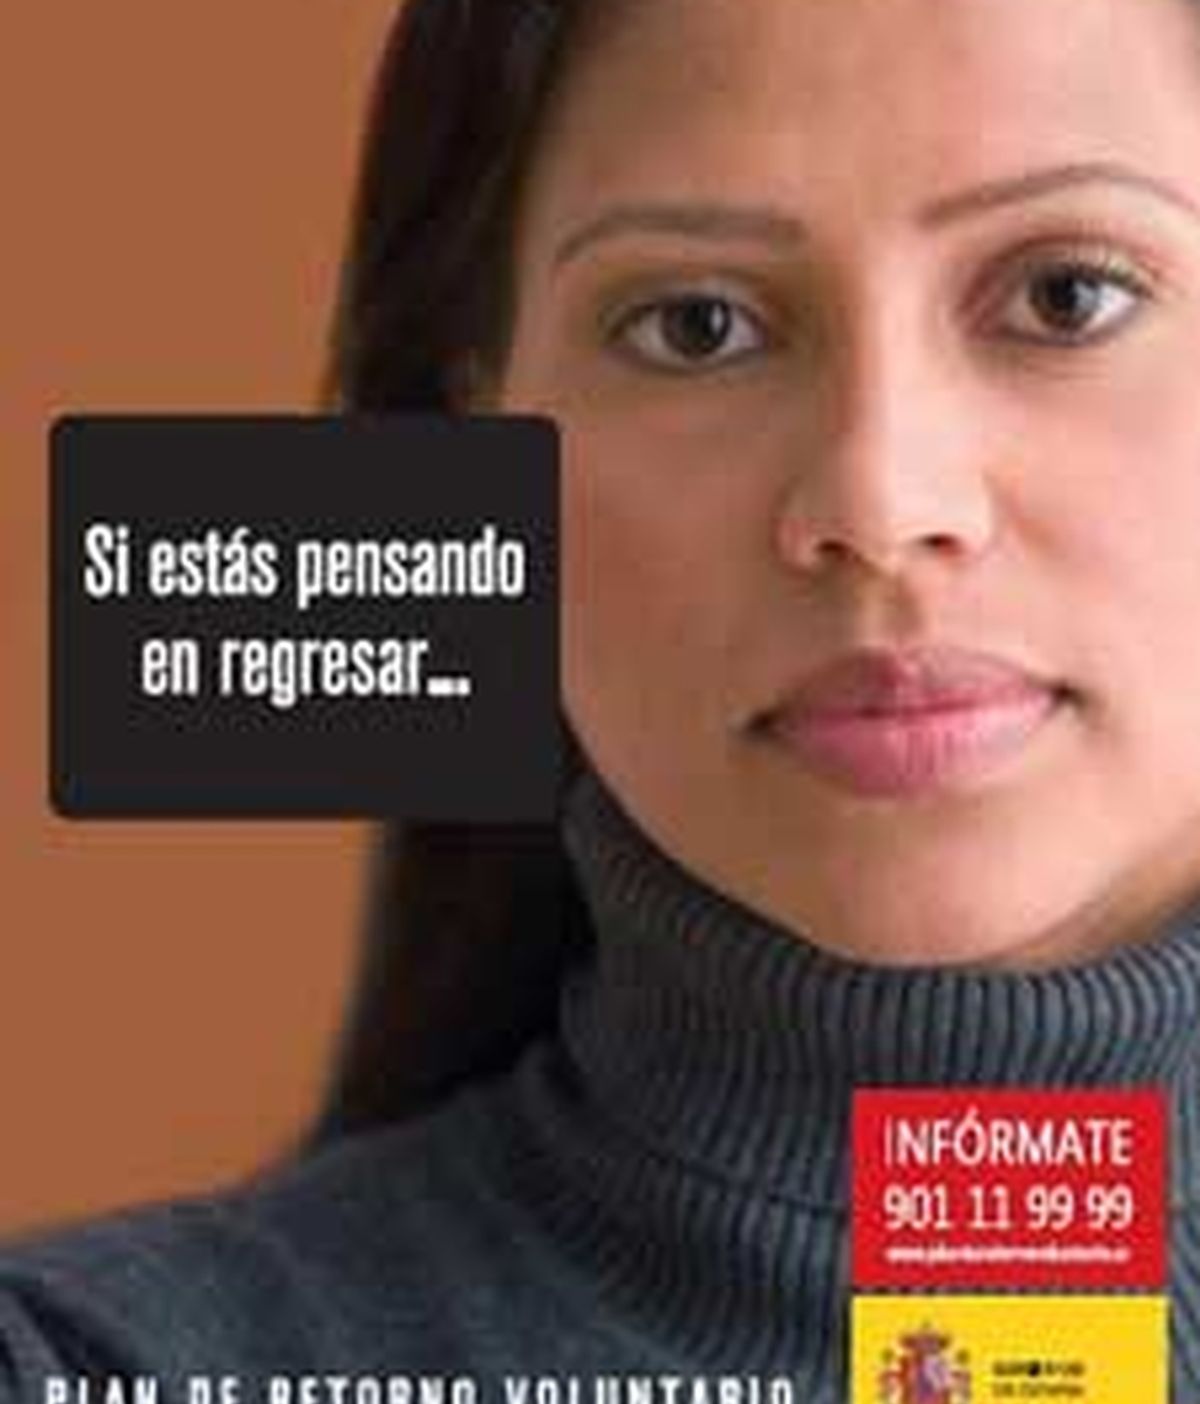 Uno de los carteles publicitarios del Plan de Retorno VOluntario del Gobierno. Foto: www.planderetornovoluntario.es